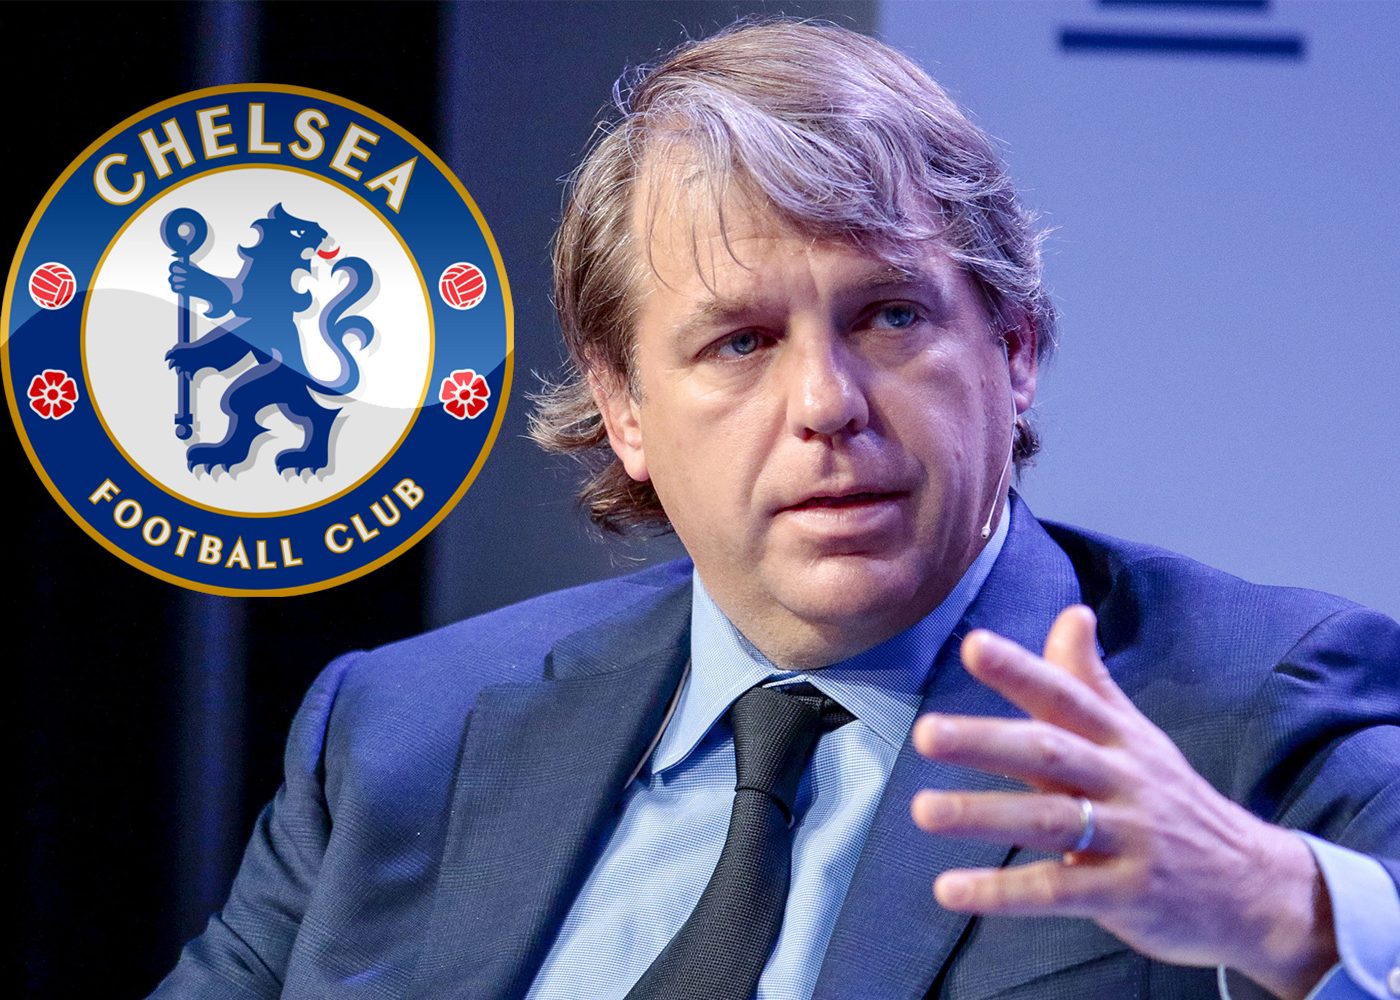 Bản tin bóng đá 31/05/2022: Chelsea thông báo hoàn tất việc tiếp quản câu lạc bộ của Todd Boehly